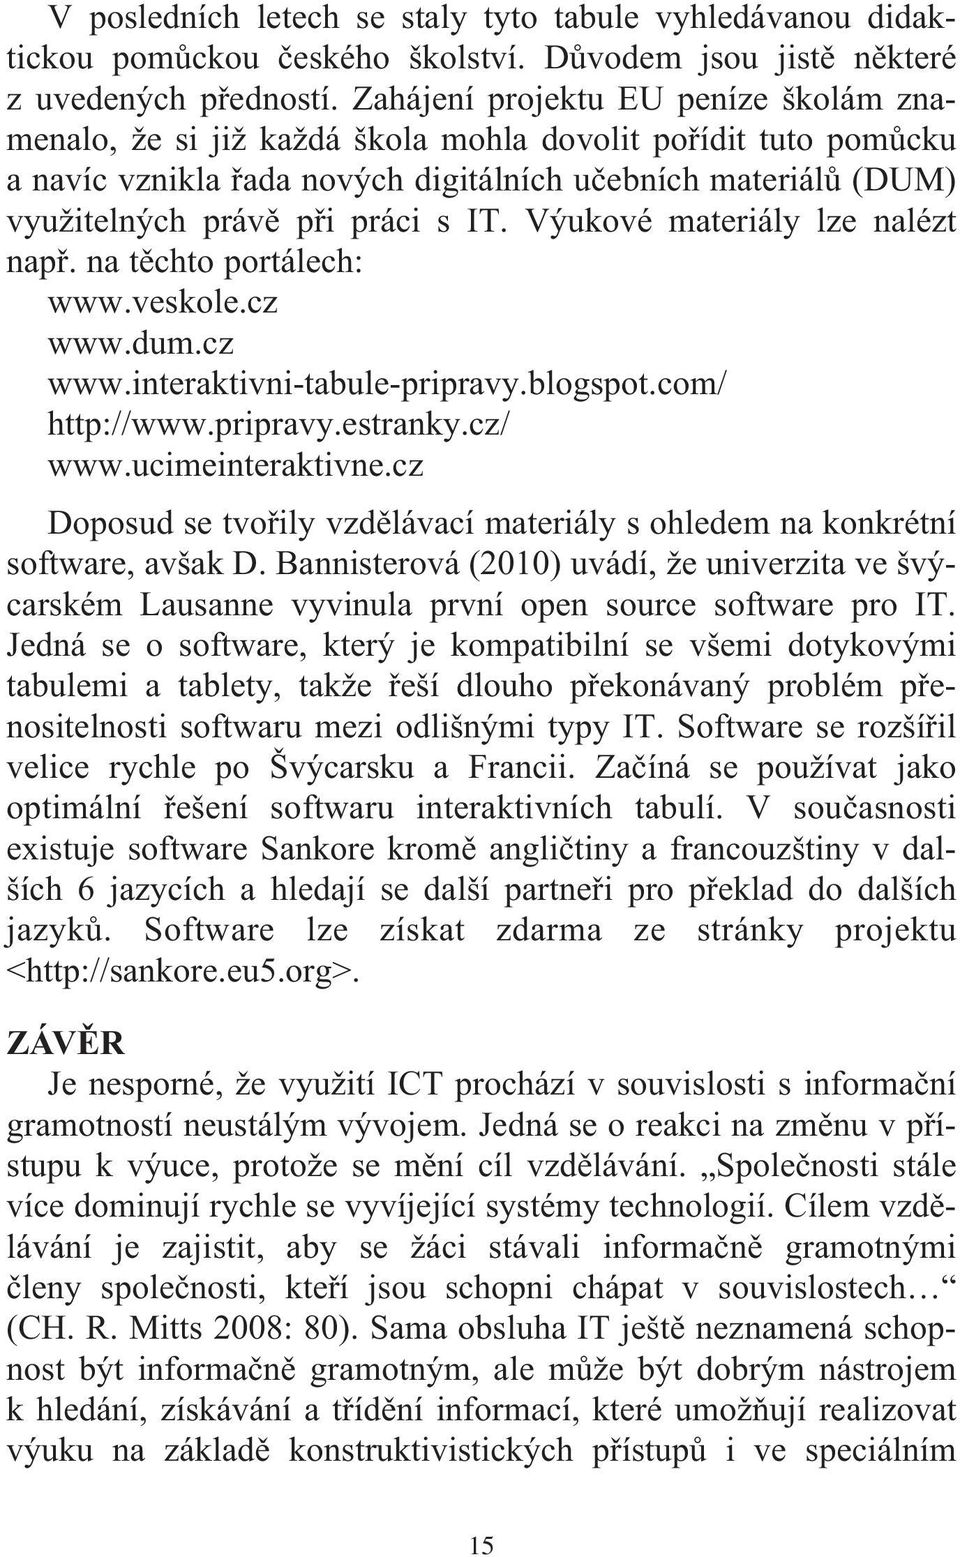 IT. Výukové materiály lze nalézt např. na těchto portálech: www.veskole.cz www.dum.cz www.interaktivni-tabule-pripravy.blogspot.com/ http://www.pripravy.estranky.cz/ www.ucimeinteraktivne.